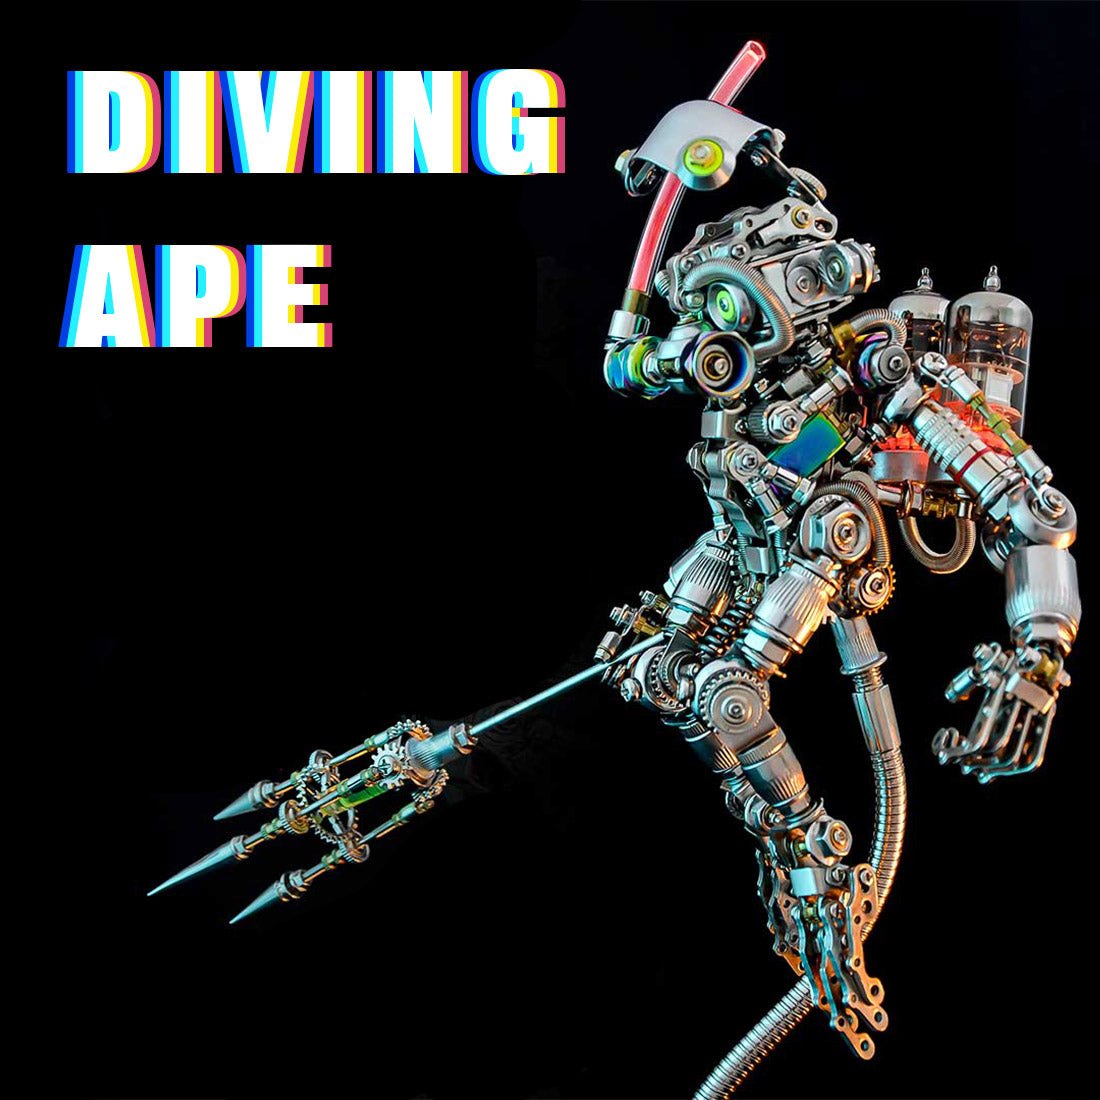 700+PCS Punk Style Diver Ape Mechanical 3D DIY Metal Model Kits